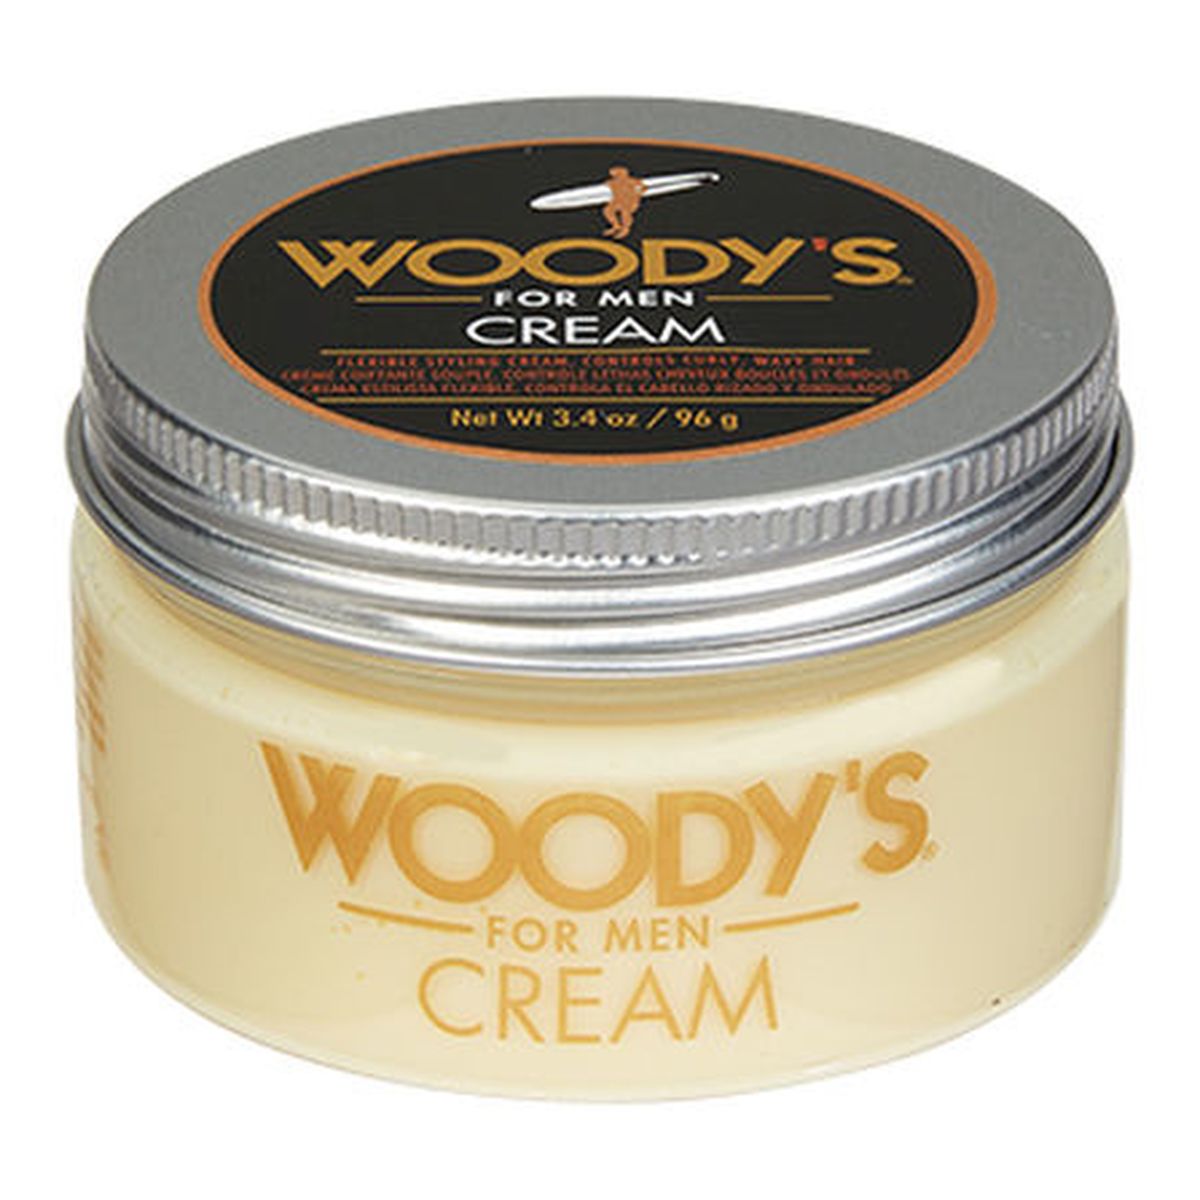 Woody’s Cream elastyczny Kremowy żel do stylizacji włosów 96g 96g